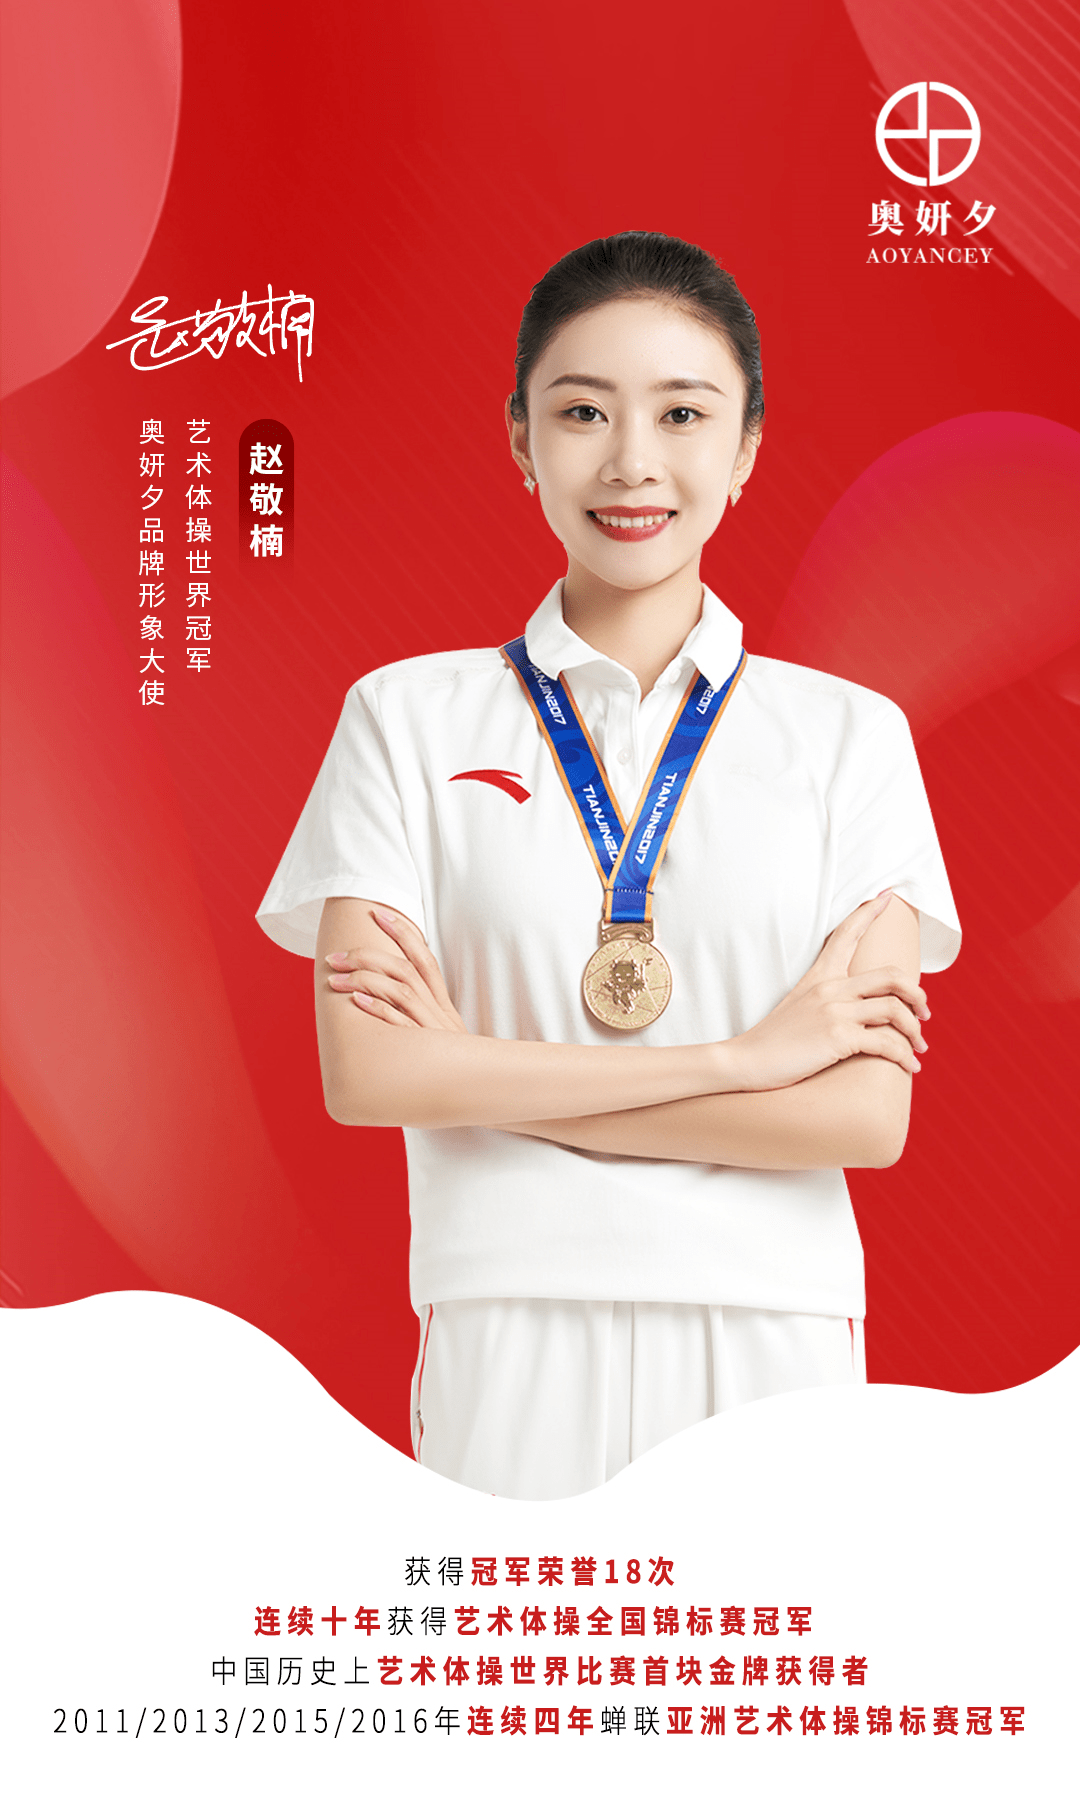 奥妍夕签约体操世界冠军赵敬楠全力打造冠军品质